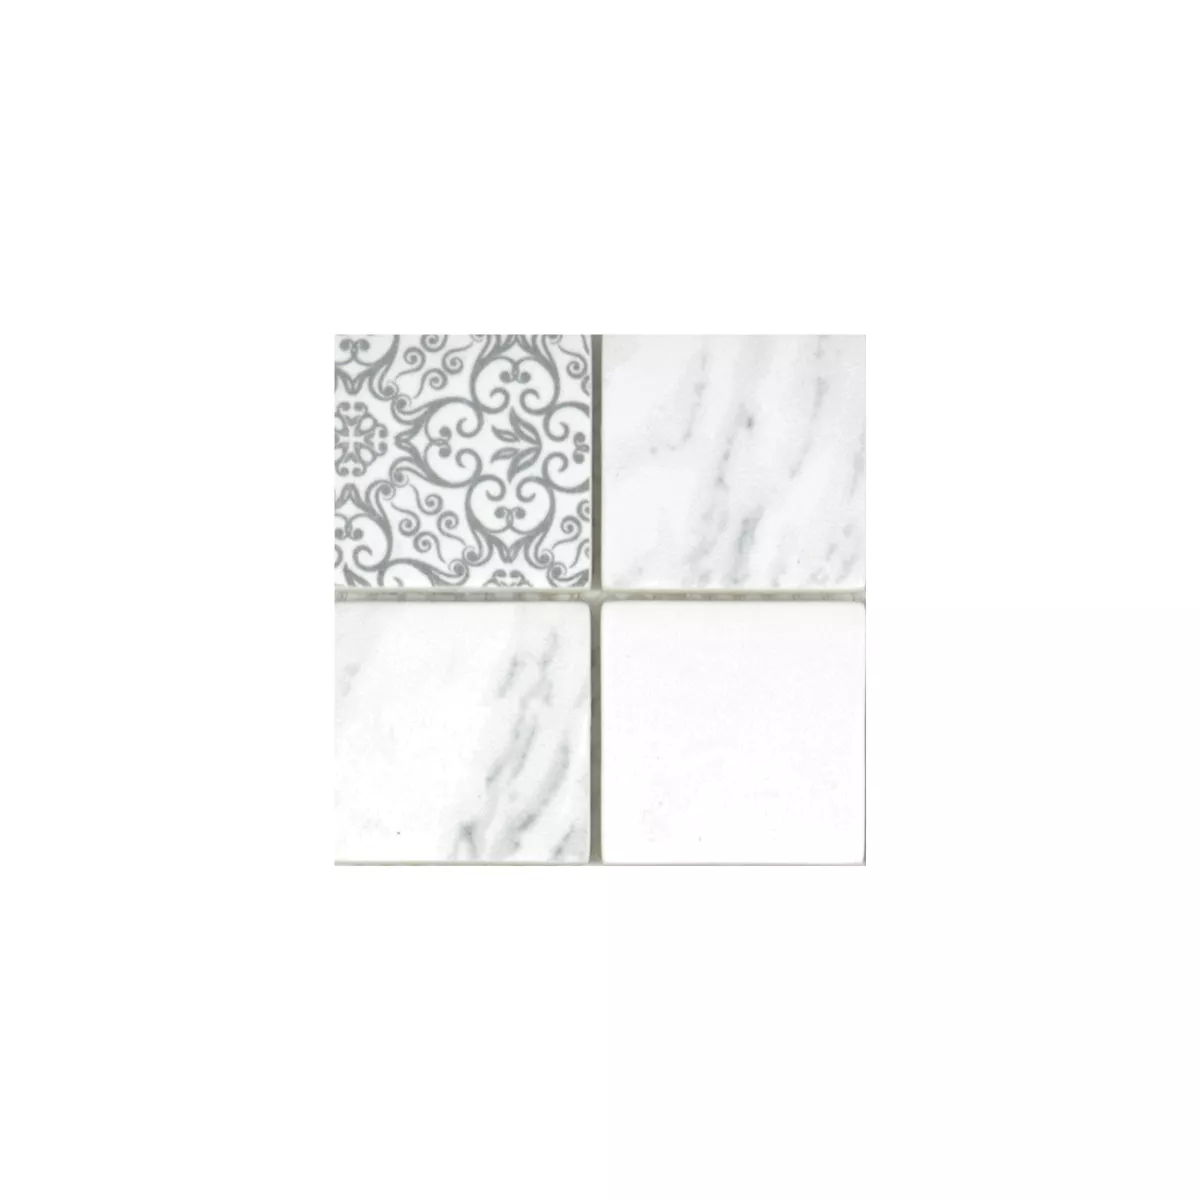 Sample Glasmozaïek Tegels Acapella Carrara Vierkant